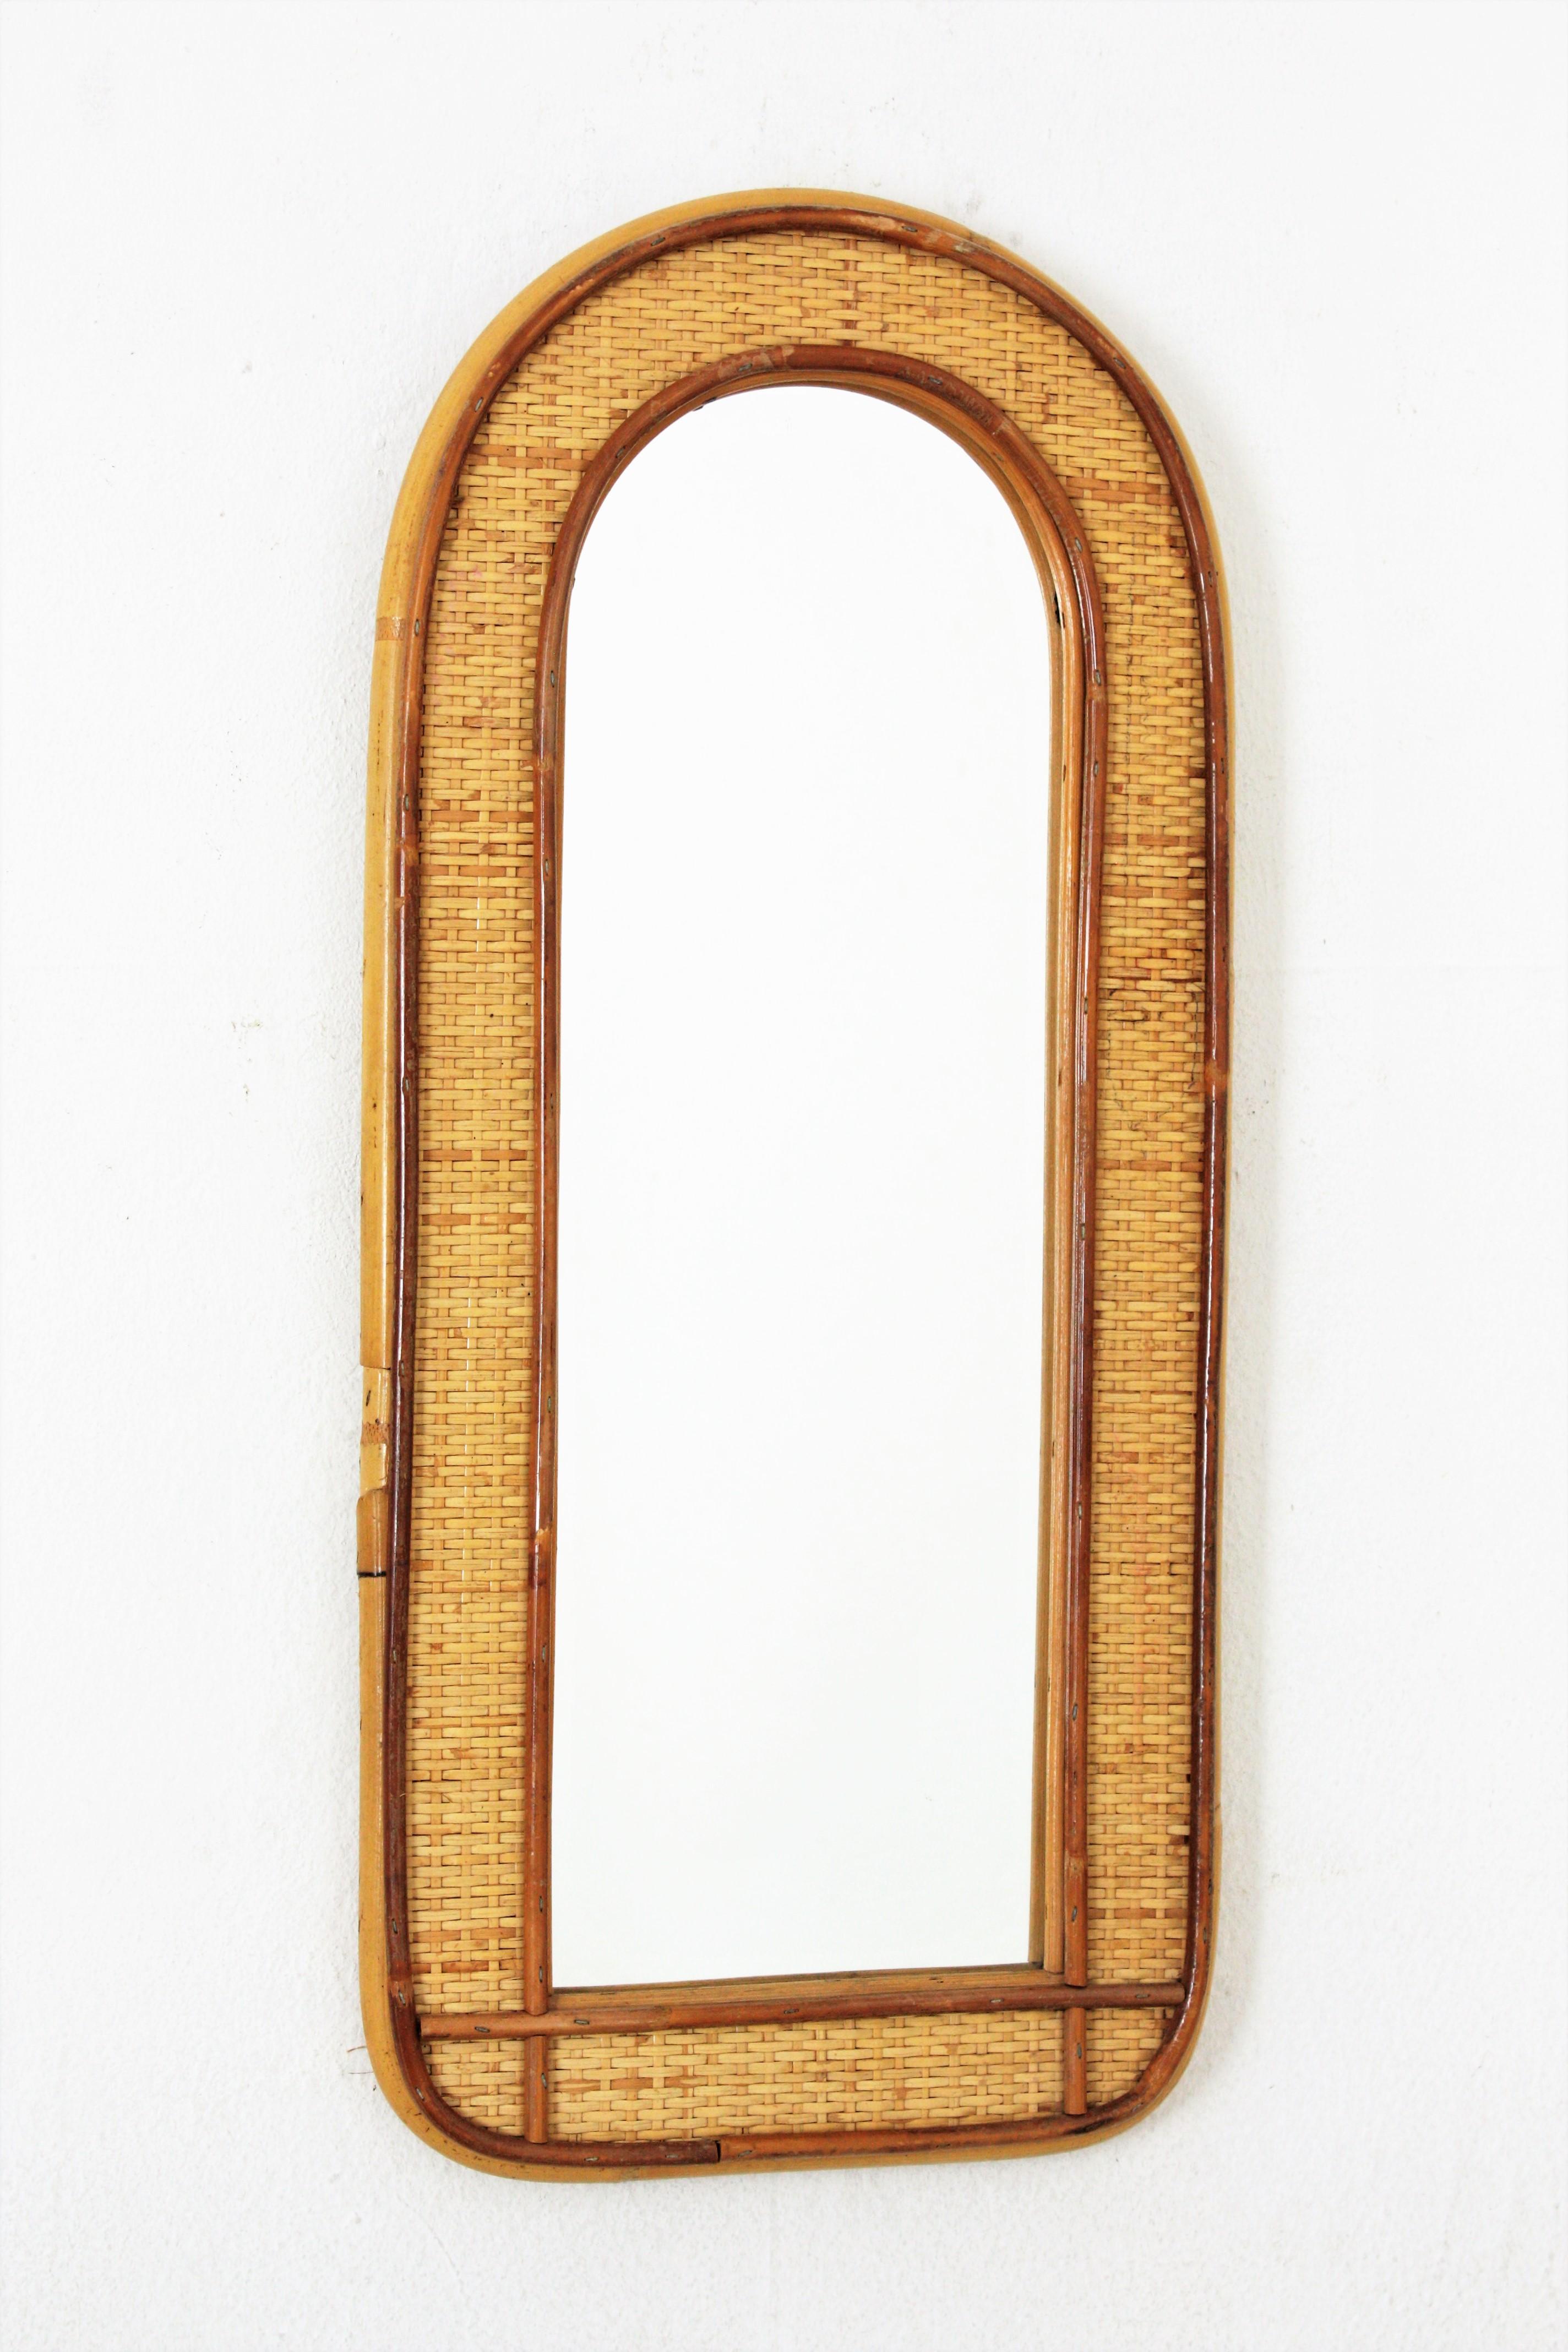 Gewölbter Spiegel aus Rattan und Weide, Italien, 1960-1970.
Eleganter Spiegel aus der Mitte des 20. Jahrhunderts aus geflochtener Weide und Bambus-Rattan mit gewölbtem Oberteil. 
Dieser schöne Spiegel mit doppeltem Rahmen aus Rattanrohr und